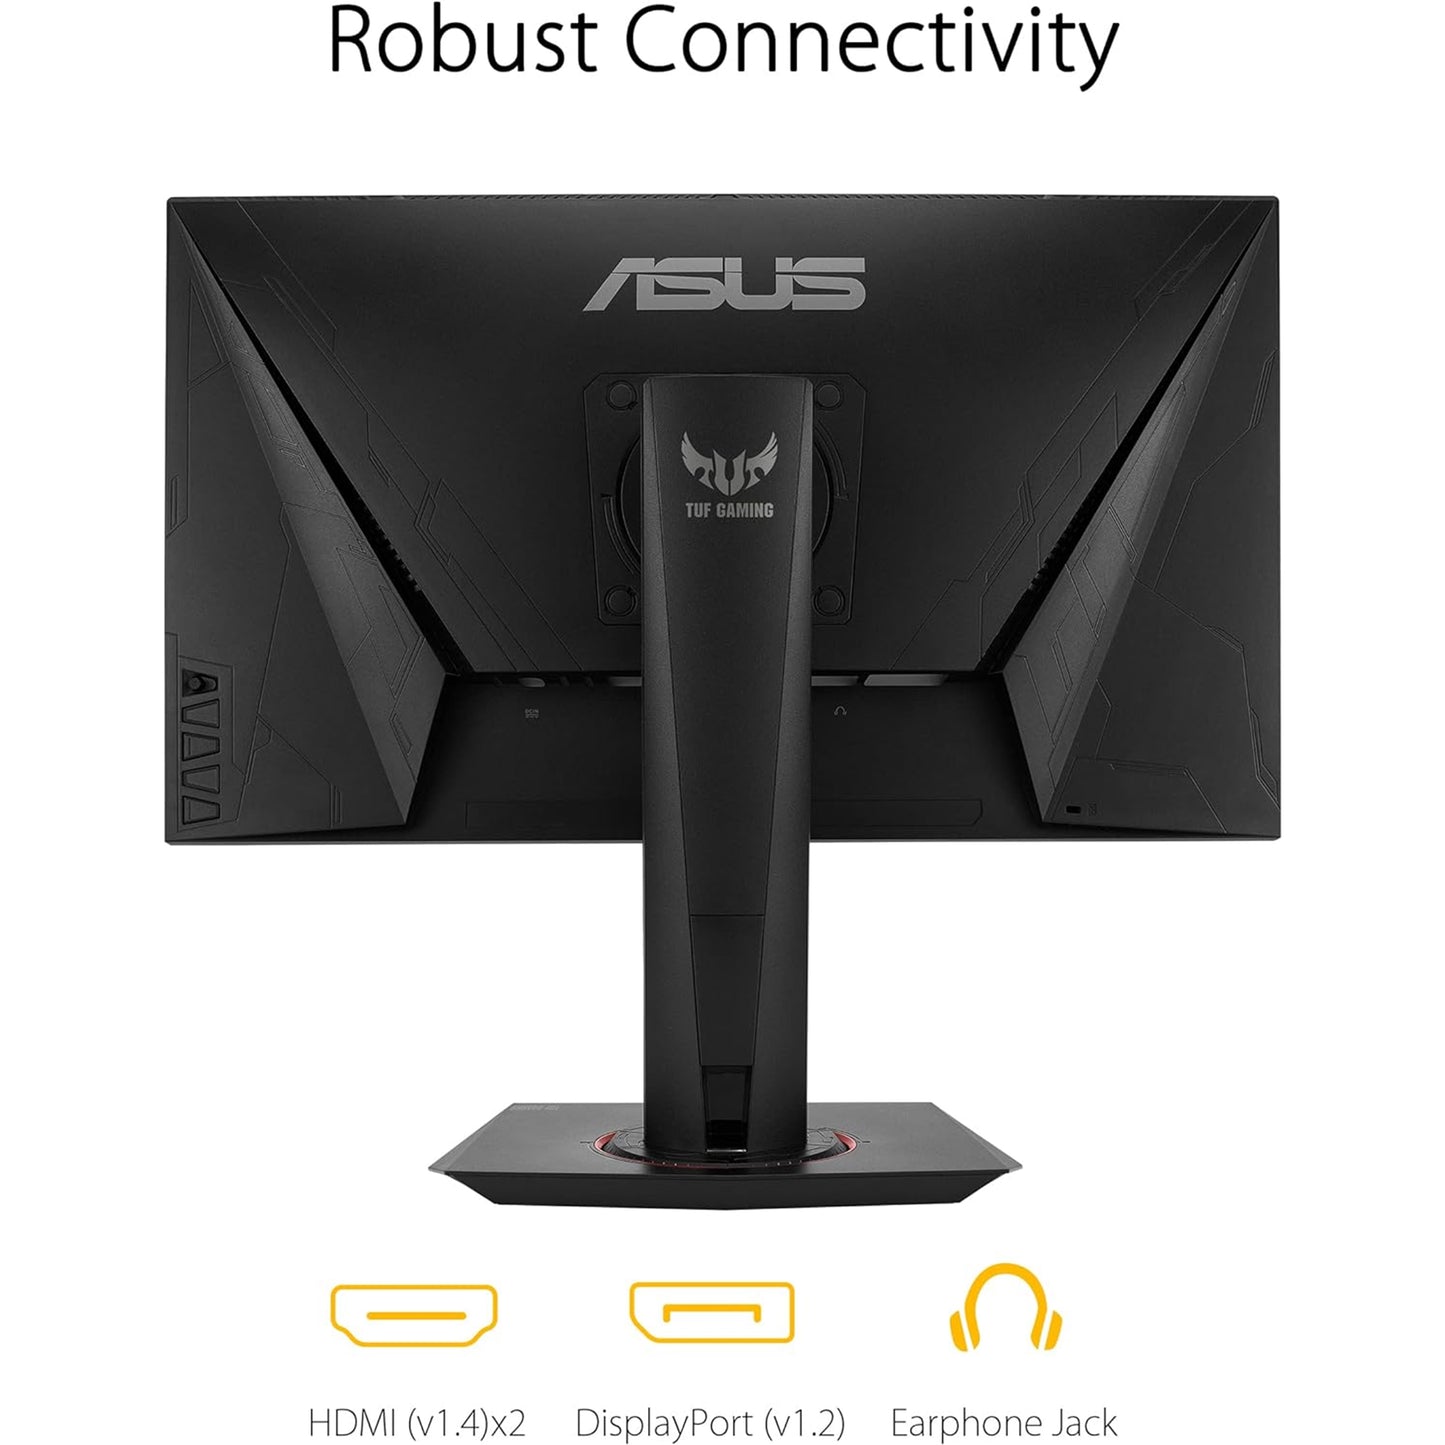 شاشة الألعاب ASUS TUF Gaming VG259QR مقاس 24.5 بوصة، بدقة 1080 بكسل عالية الدقة، 165 هرتز (يدعم 144 هرتز)، 1 مللي ثانية، ضبابية حركة منخفضة للغاية، جاهزة لـ G-SYNC، العناية بالعين، منفذ DisplayPort HDMI، Shadow Boost، ارتفاع قابل للتعديل، أسود 